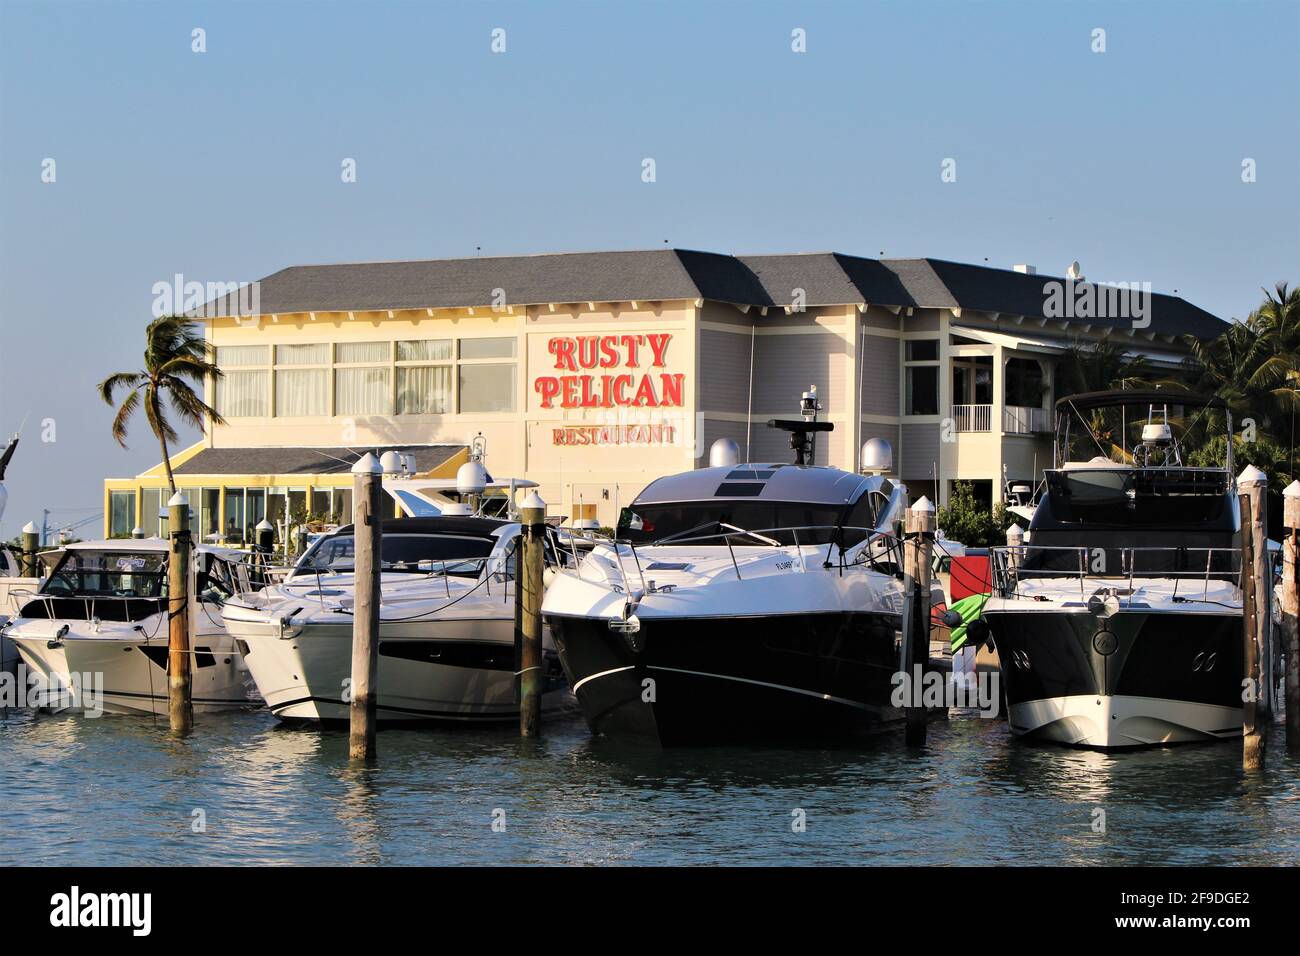 Panneau indiquant le restaurant Rusty Pelican. Situé sur la marina de Rickenbacker, restaurant en plein air avec vue sur Miami. Banque D'Images